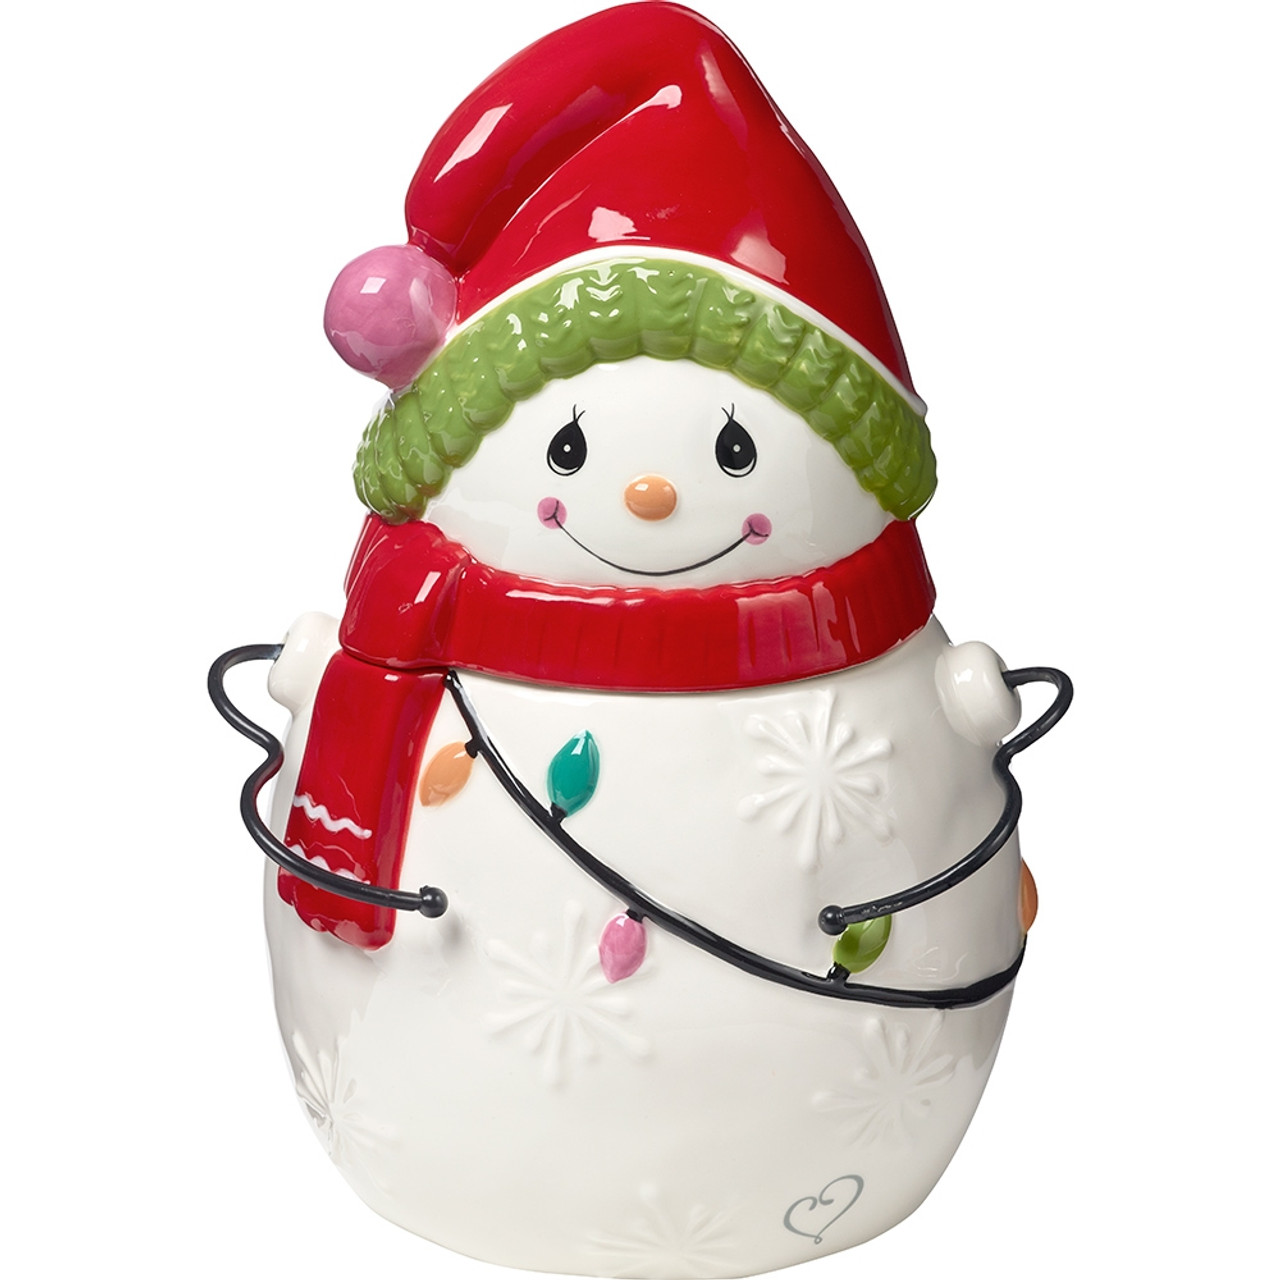 Be Jolly, Ceramic/Metal Snowman Cookie Jar